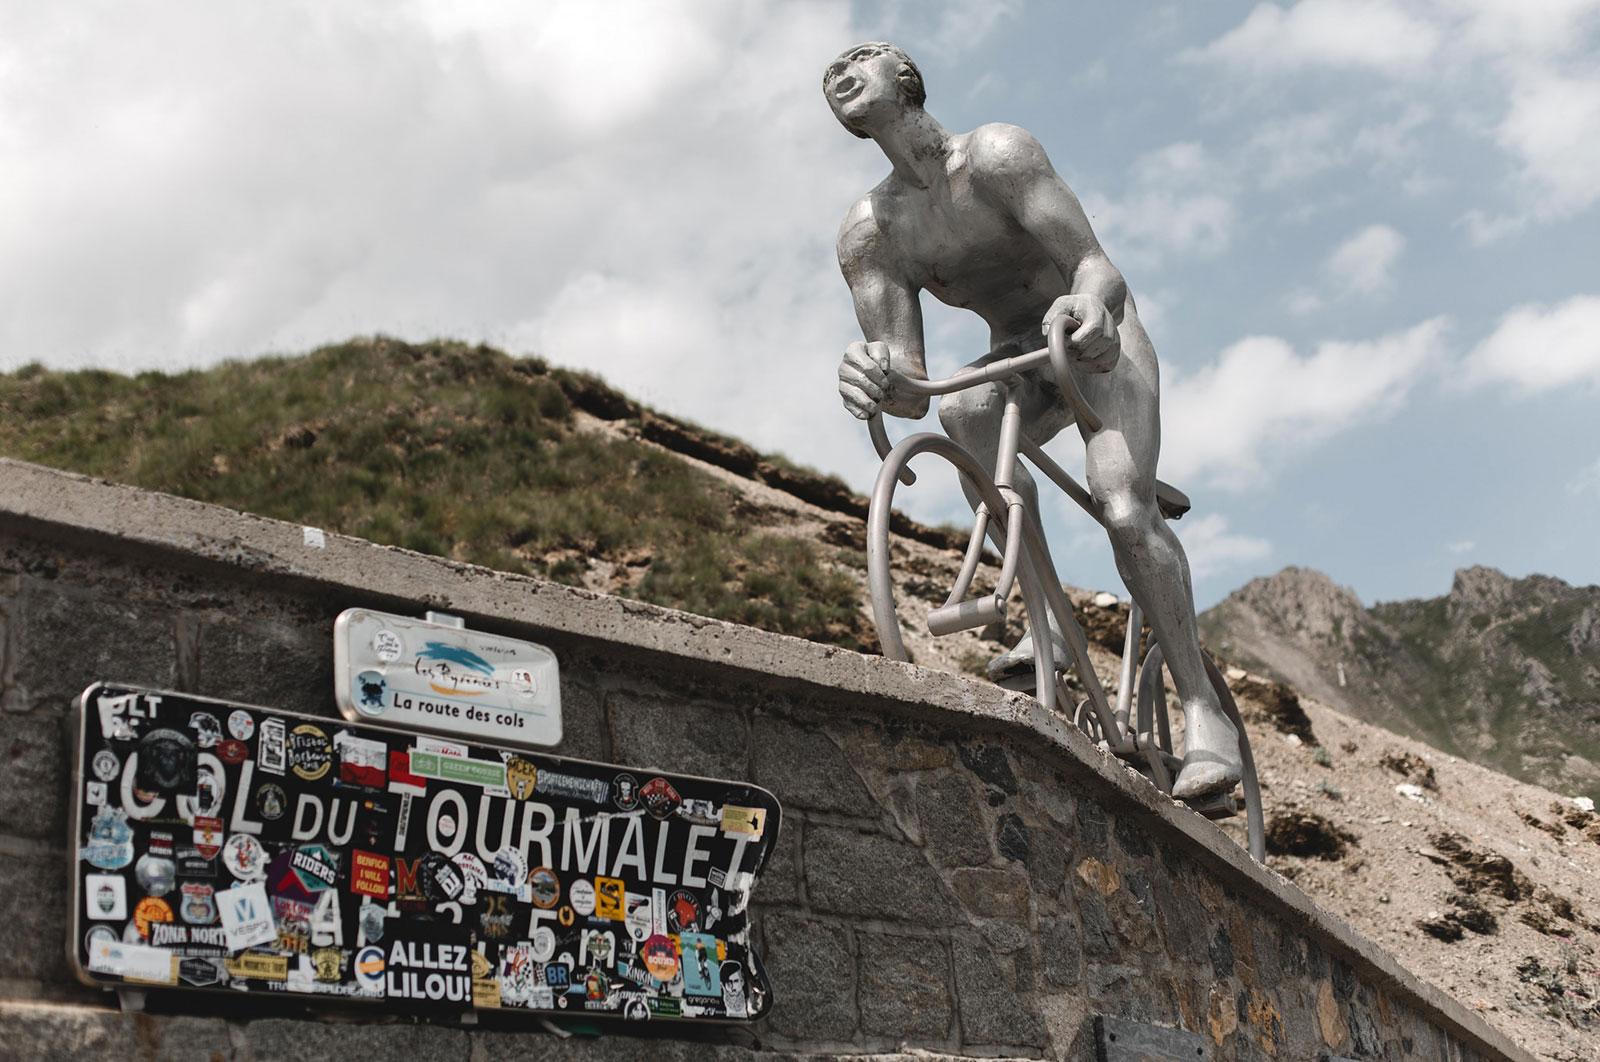 Col du Tourmalet at the Tour de France